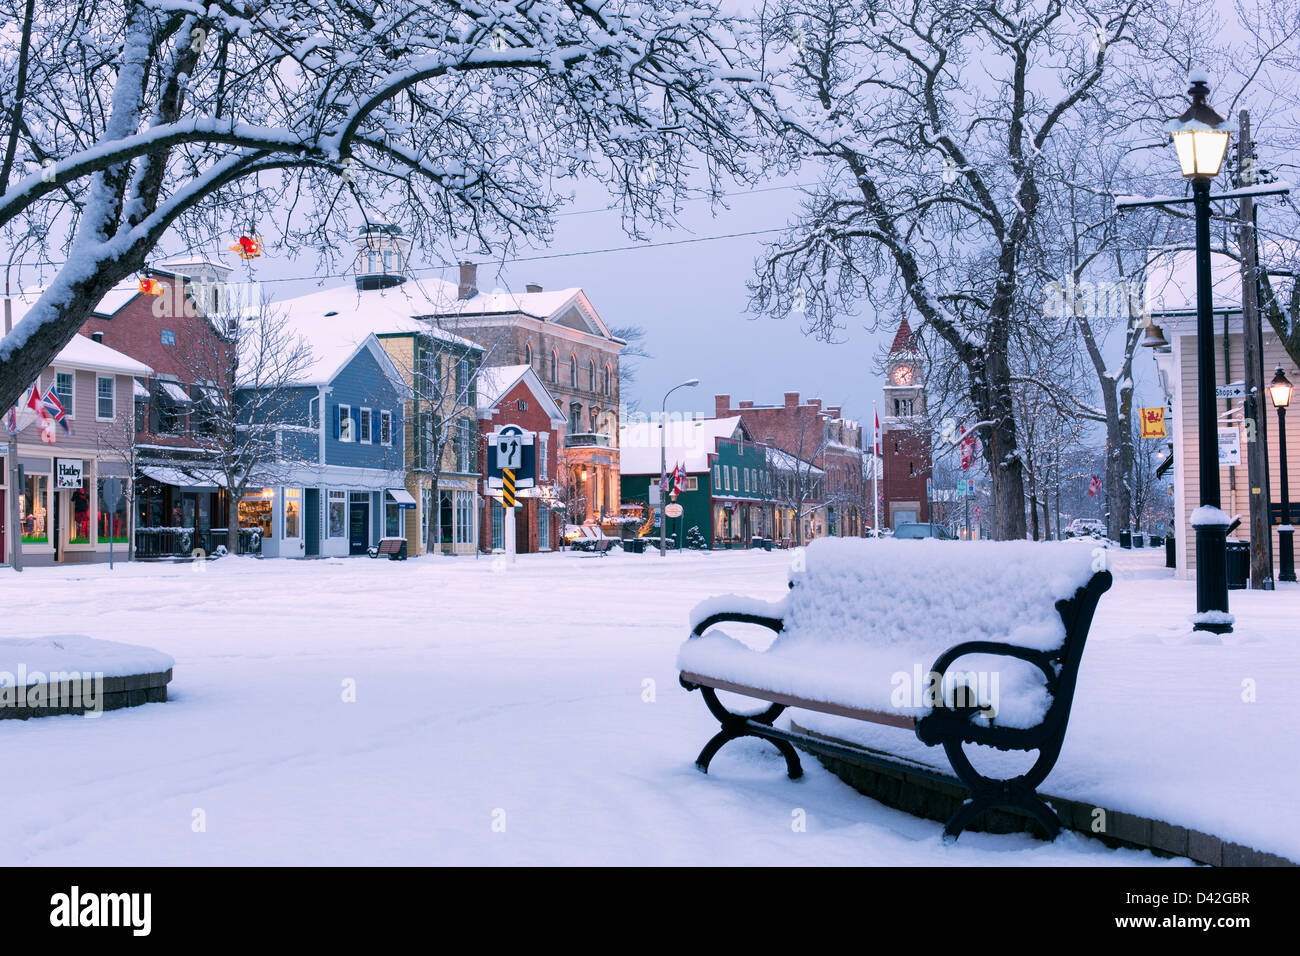 Kanada, Ontario, Niagara-on-the-Lake, Queen Street, früher Wintermorgen, parkbank mit Schnee bedeckt, zeigt eine Hauptstraße mit Geschäften. Stockfoto